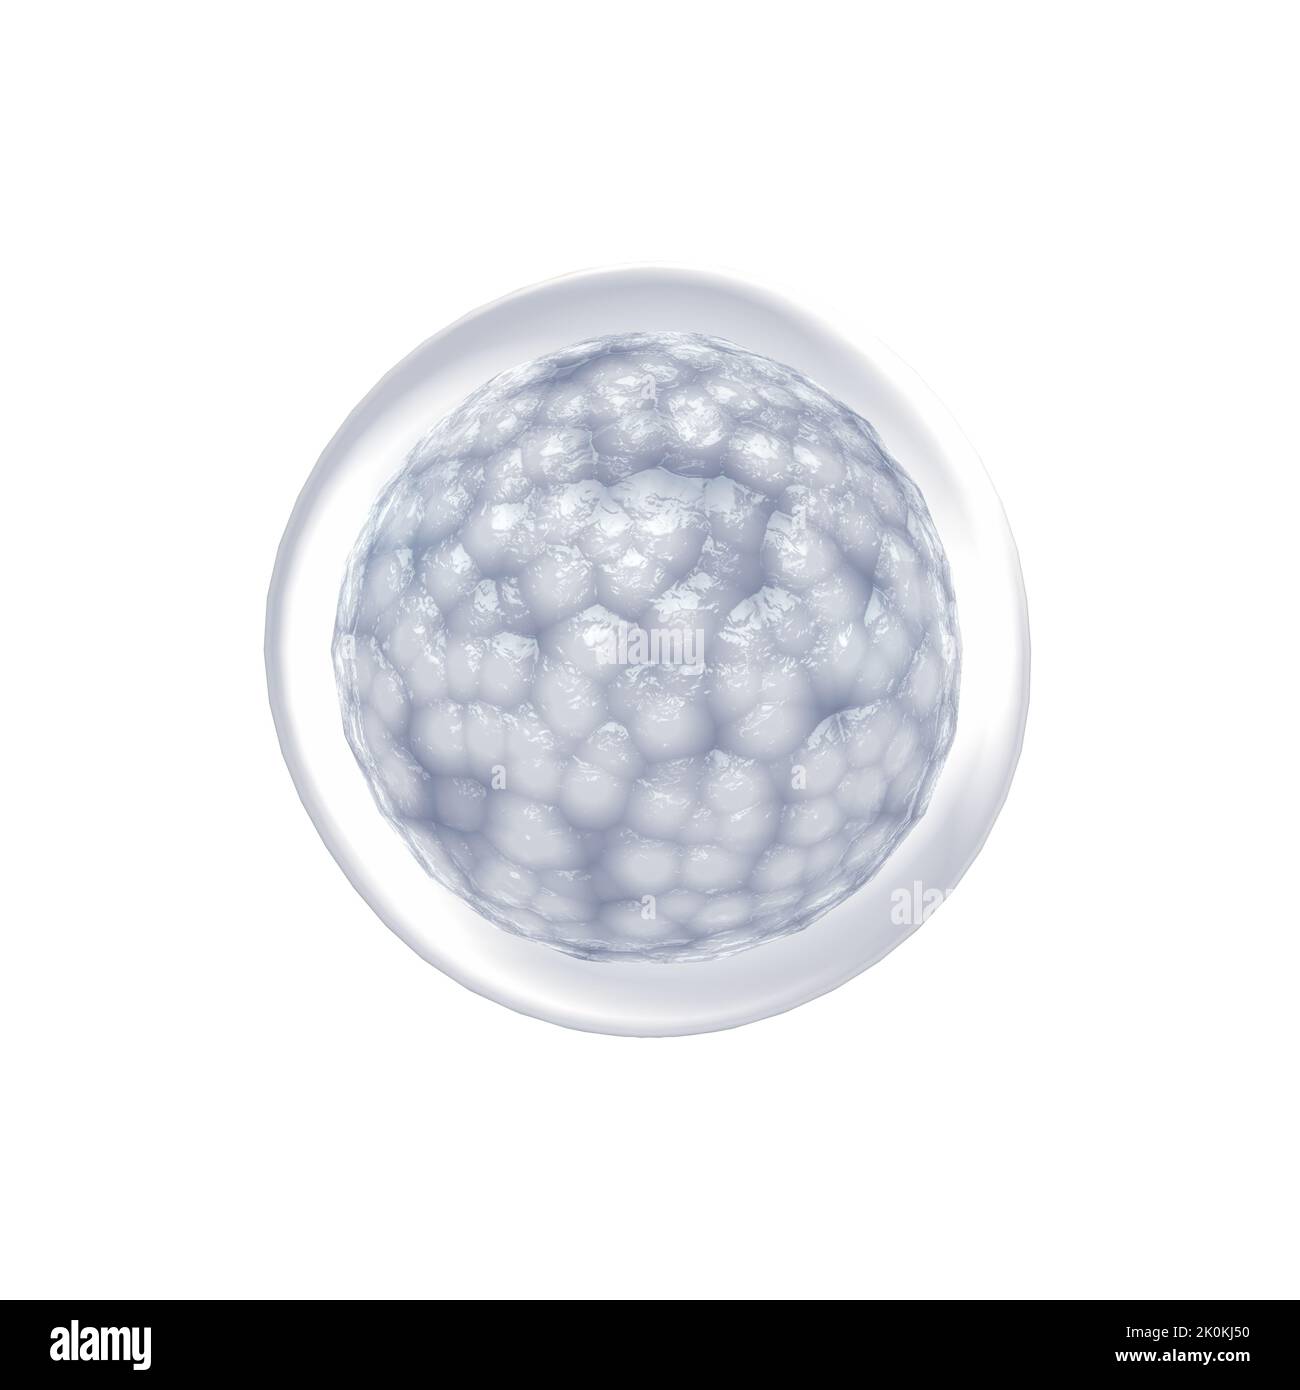 Cellule staminali embrionali isolate su bianco. Riparare le cellule danneggiate riducendo l'infiammazione e modulando il sistema immunitario Foto Stock